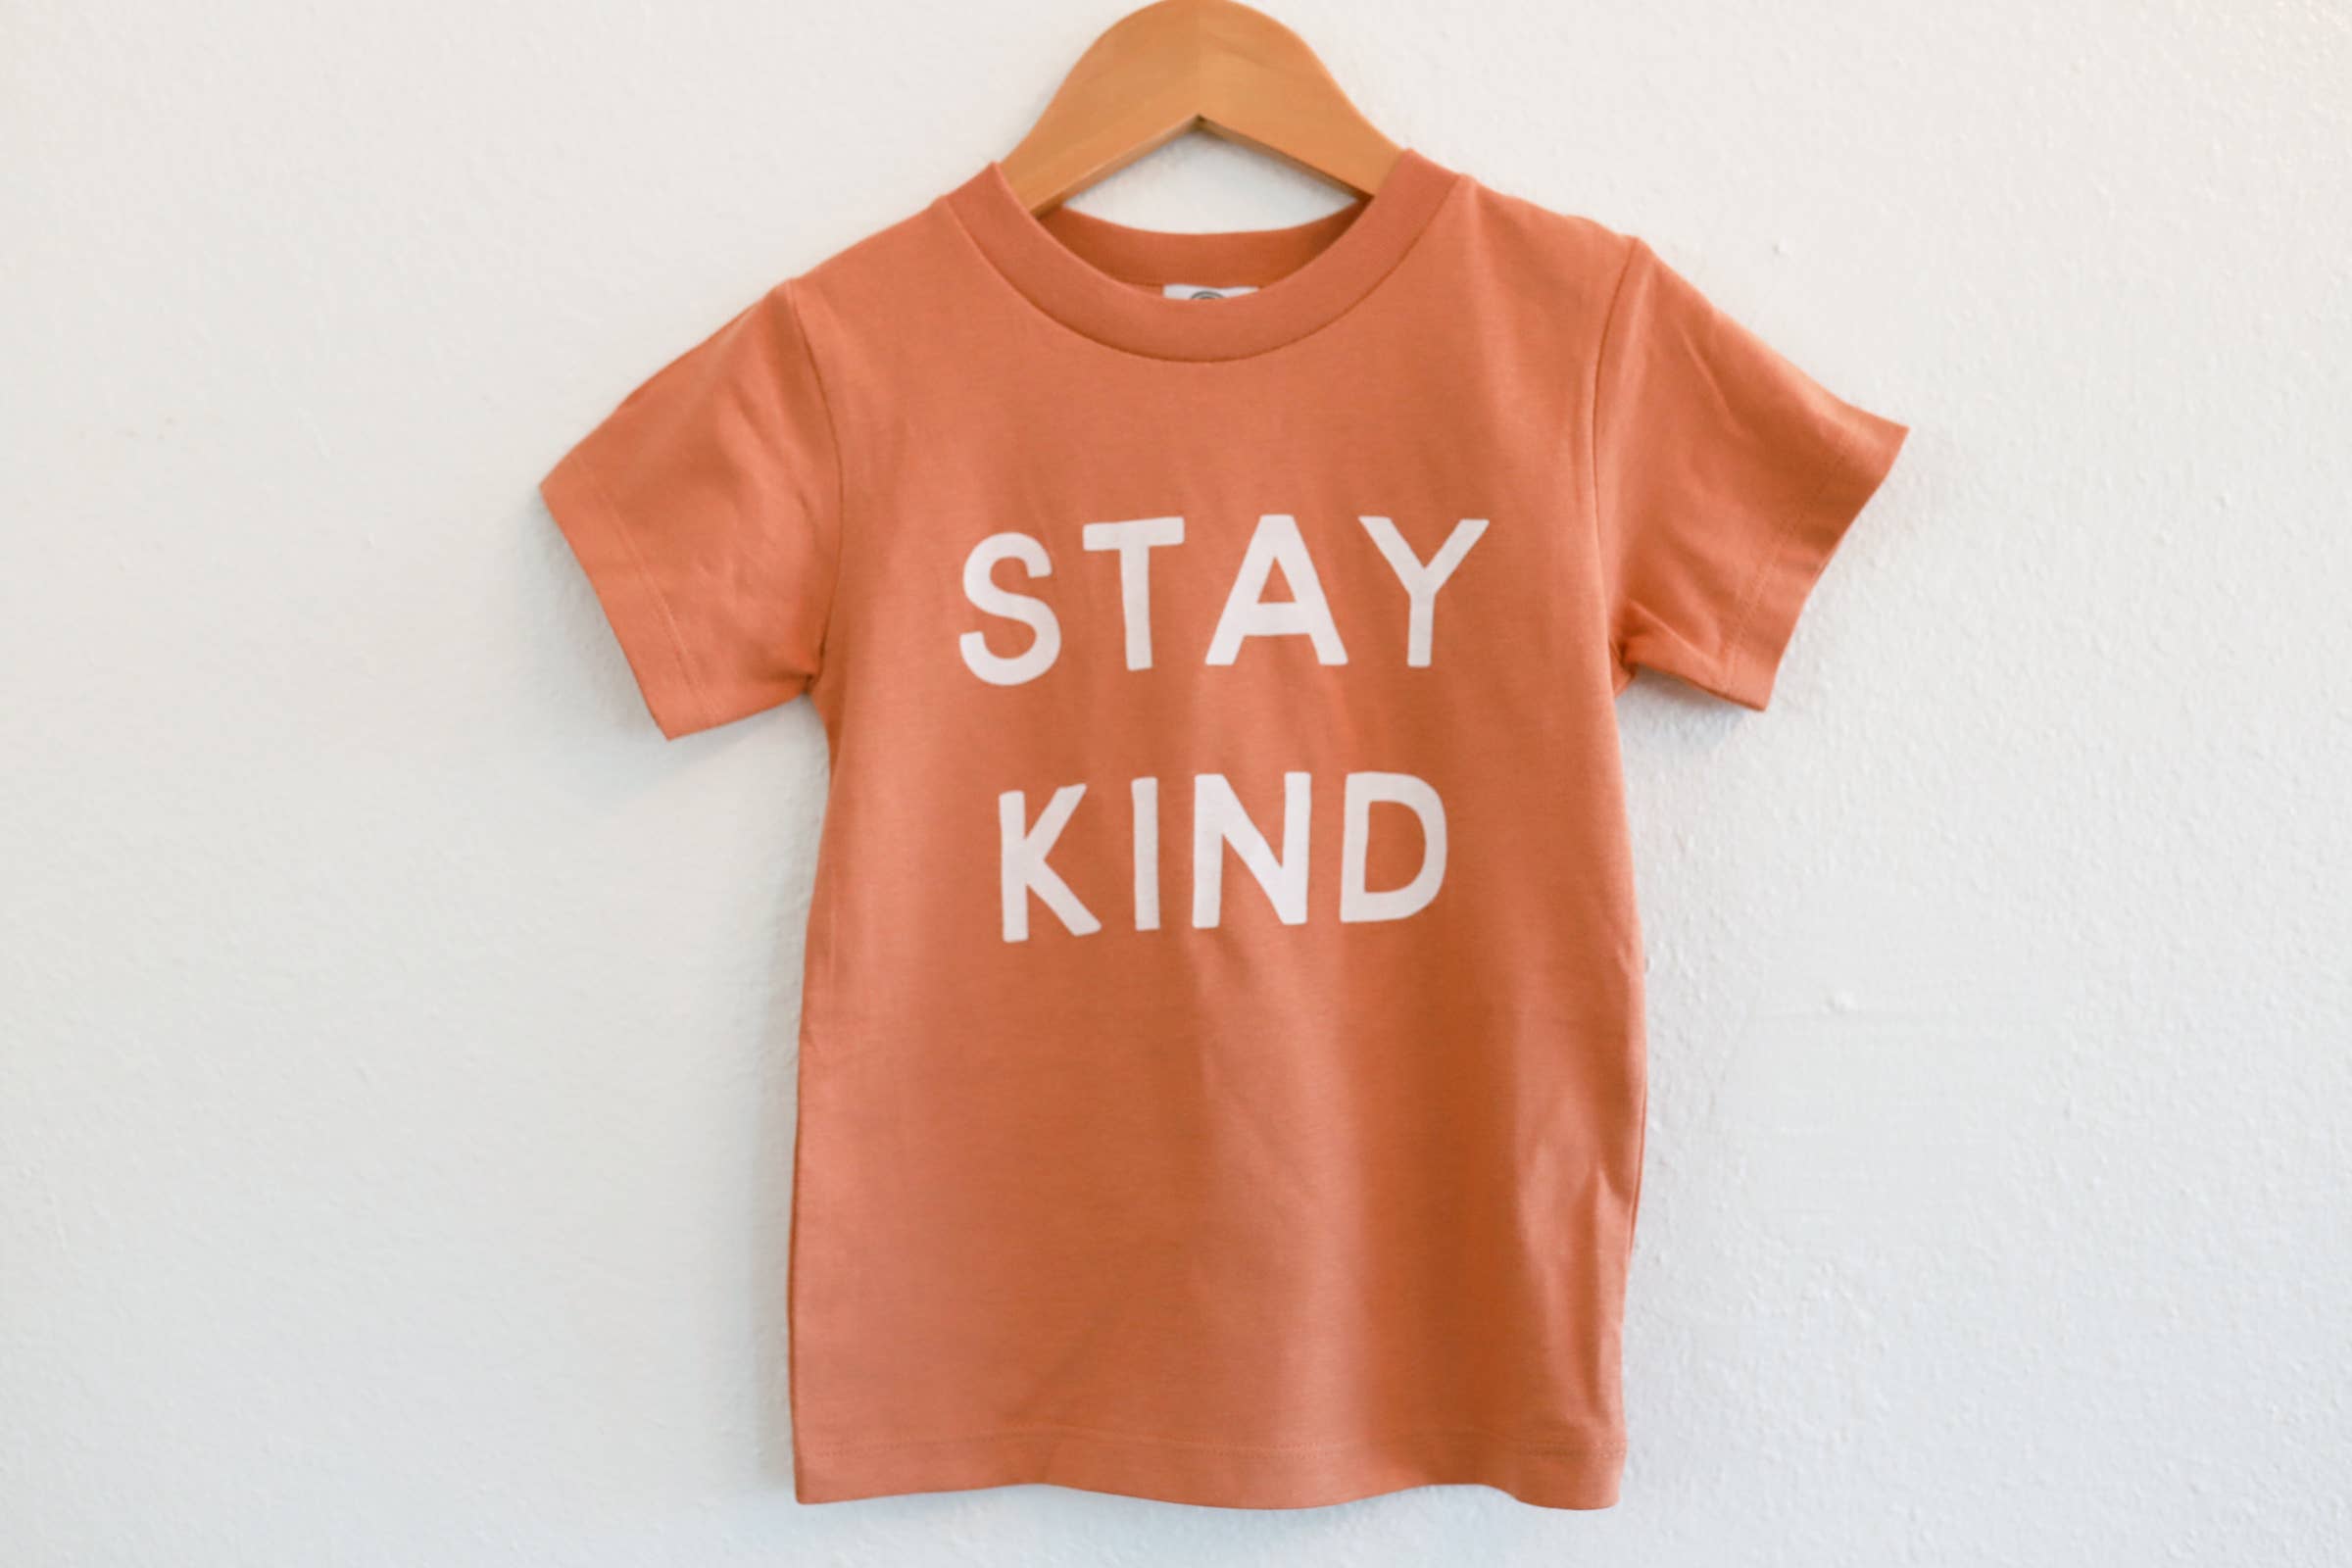 Polished Prints Kids Tee "Stay Kind"